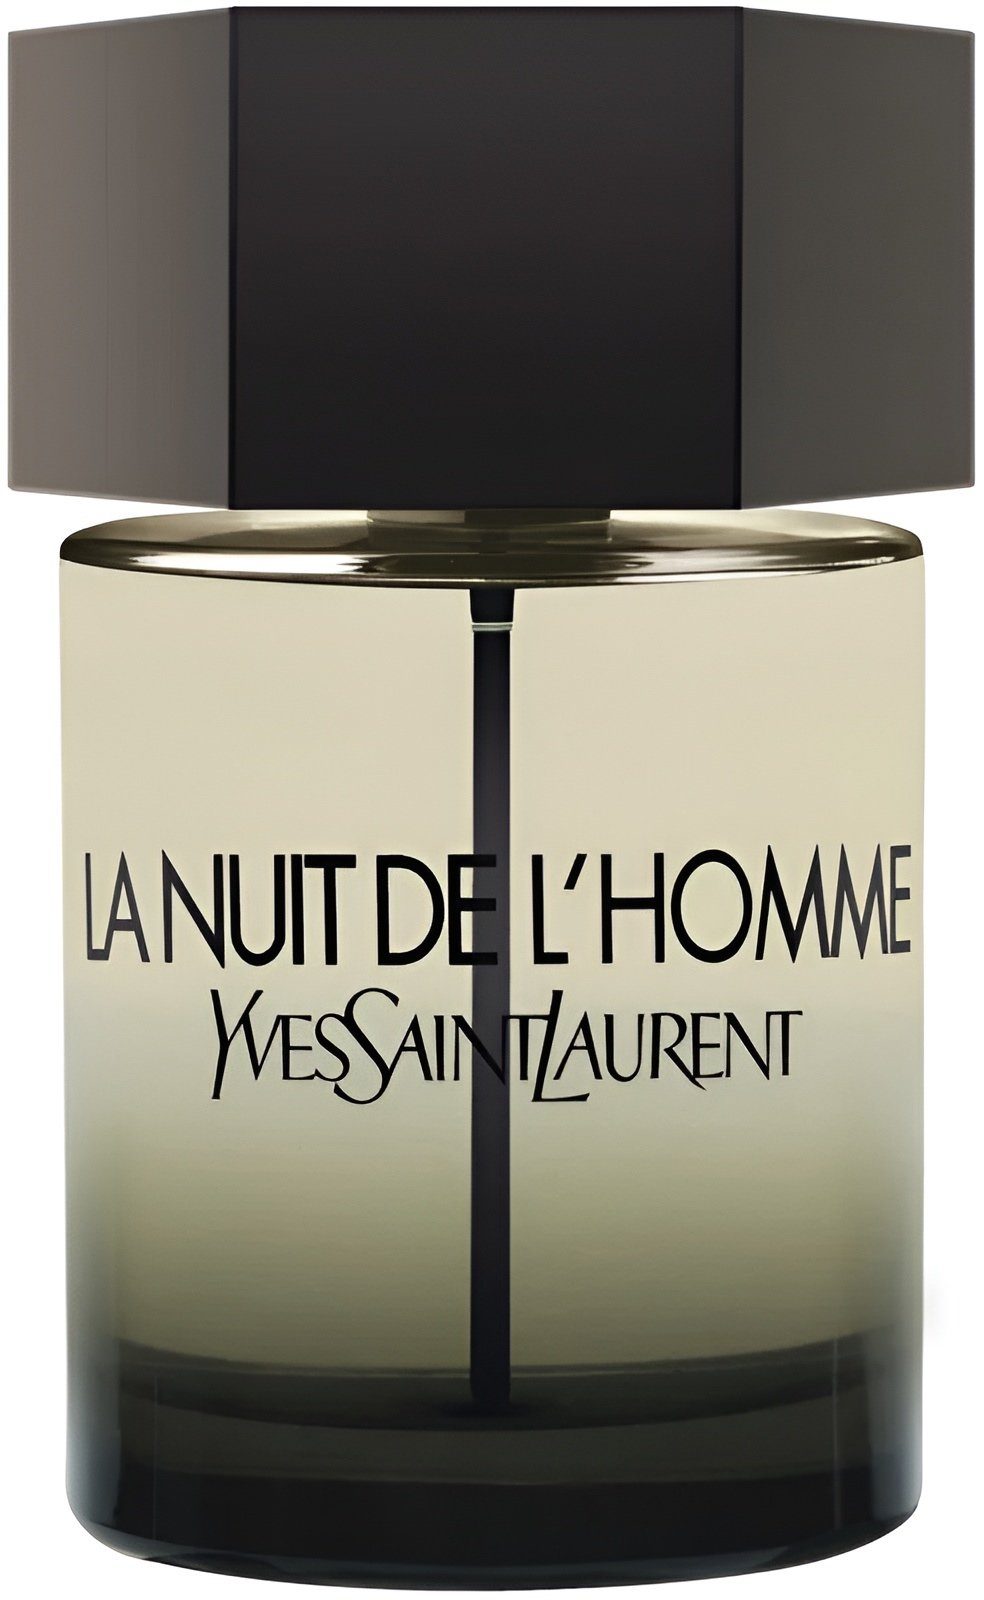 YVES für Männer Parfüm Parfum La Nuit Saint Yves Herren, Laurent de Eau Qualität Toilette de L LAURENT Homme Düft Herren Yves de Eau Langanhaltend Saint SAINT Laurent